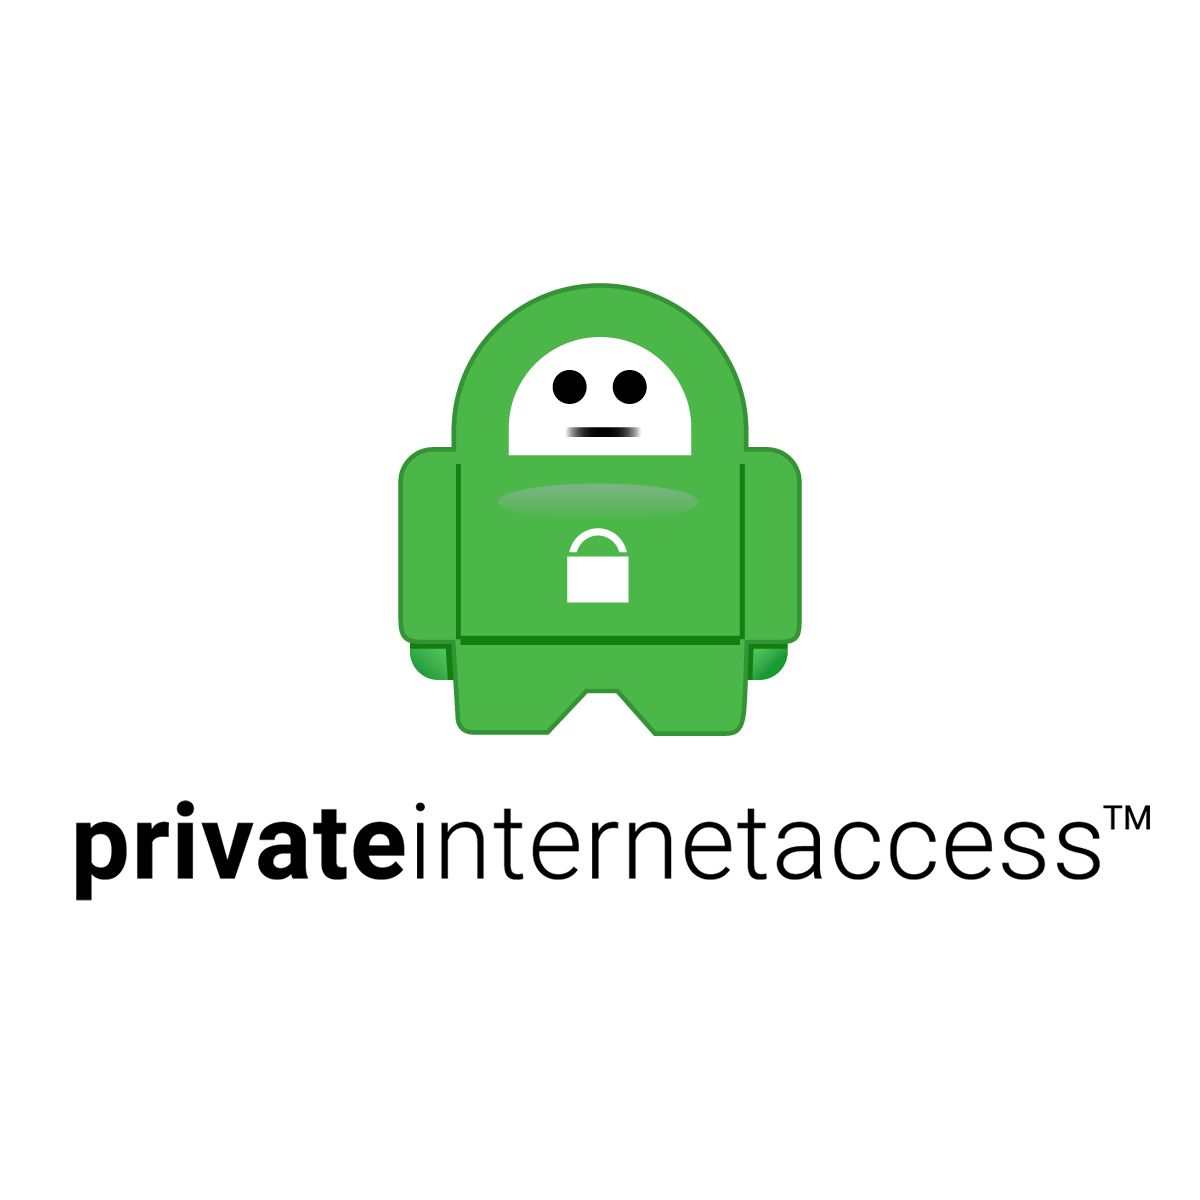 Logotipo VPN de acesso privado à Internet em fundo branco